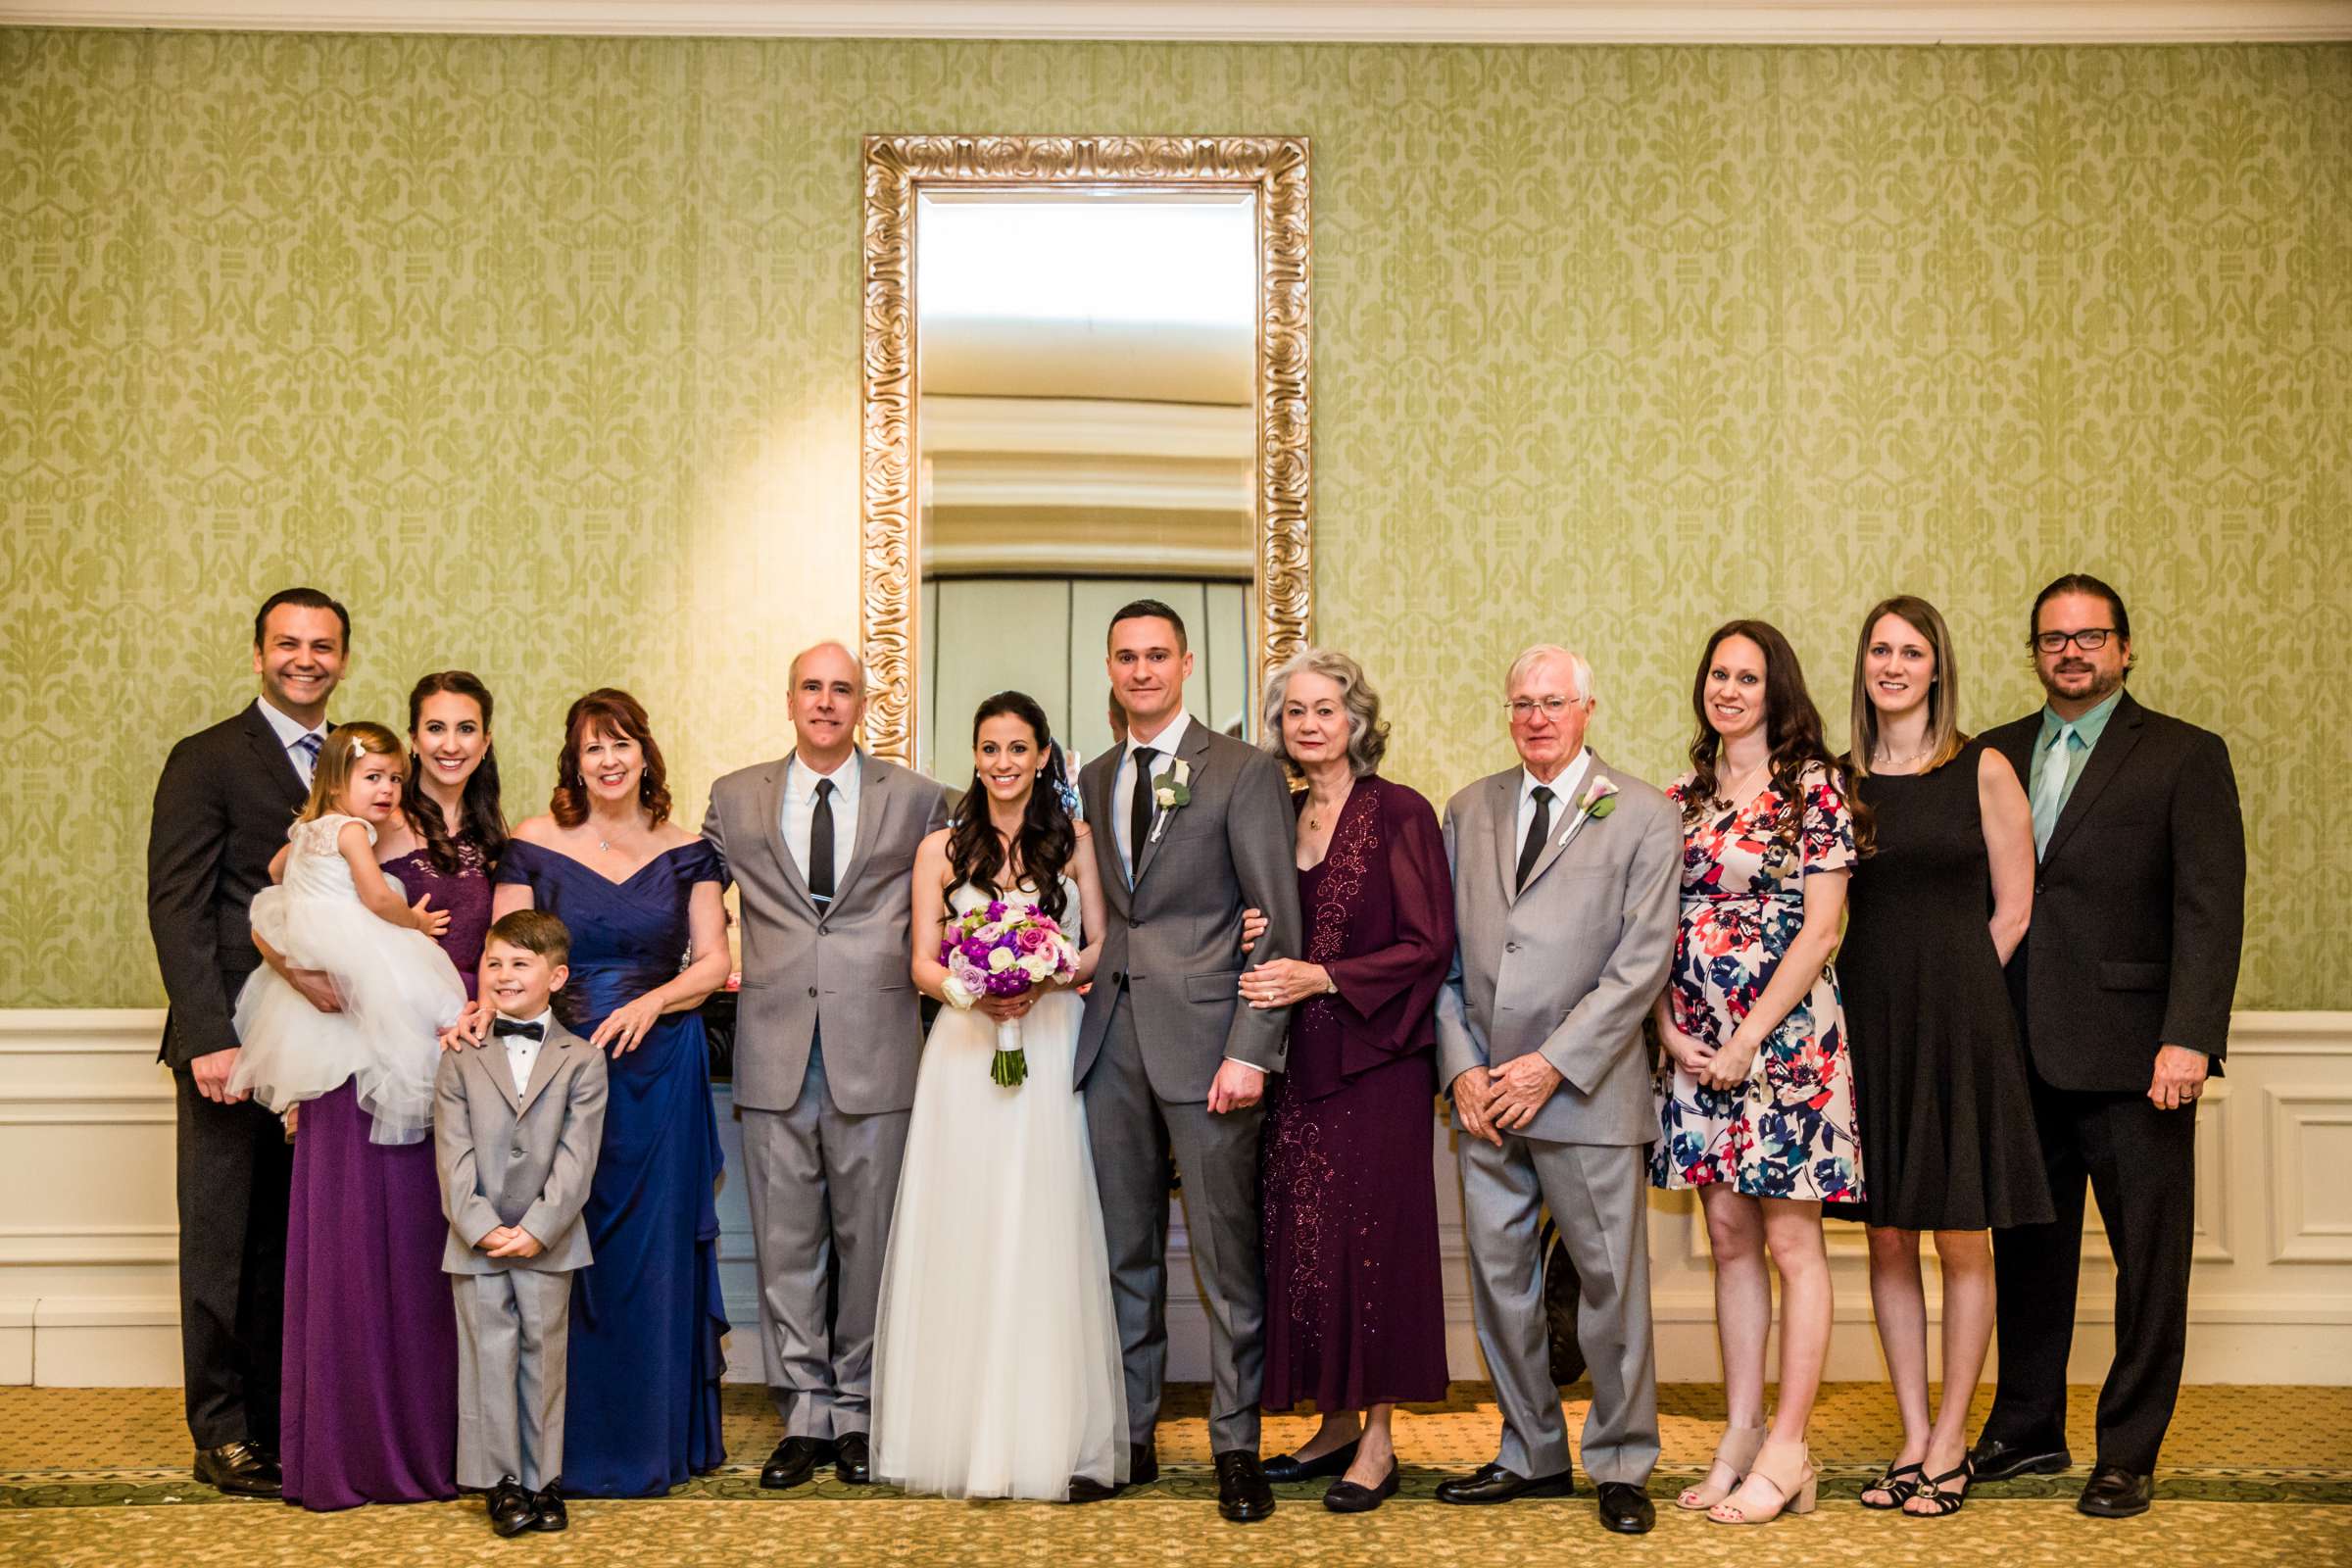 Park Hyatt Aviara Wedding, Jena and Keaton Wedding Photo #74 by True Photography